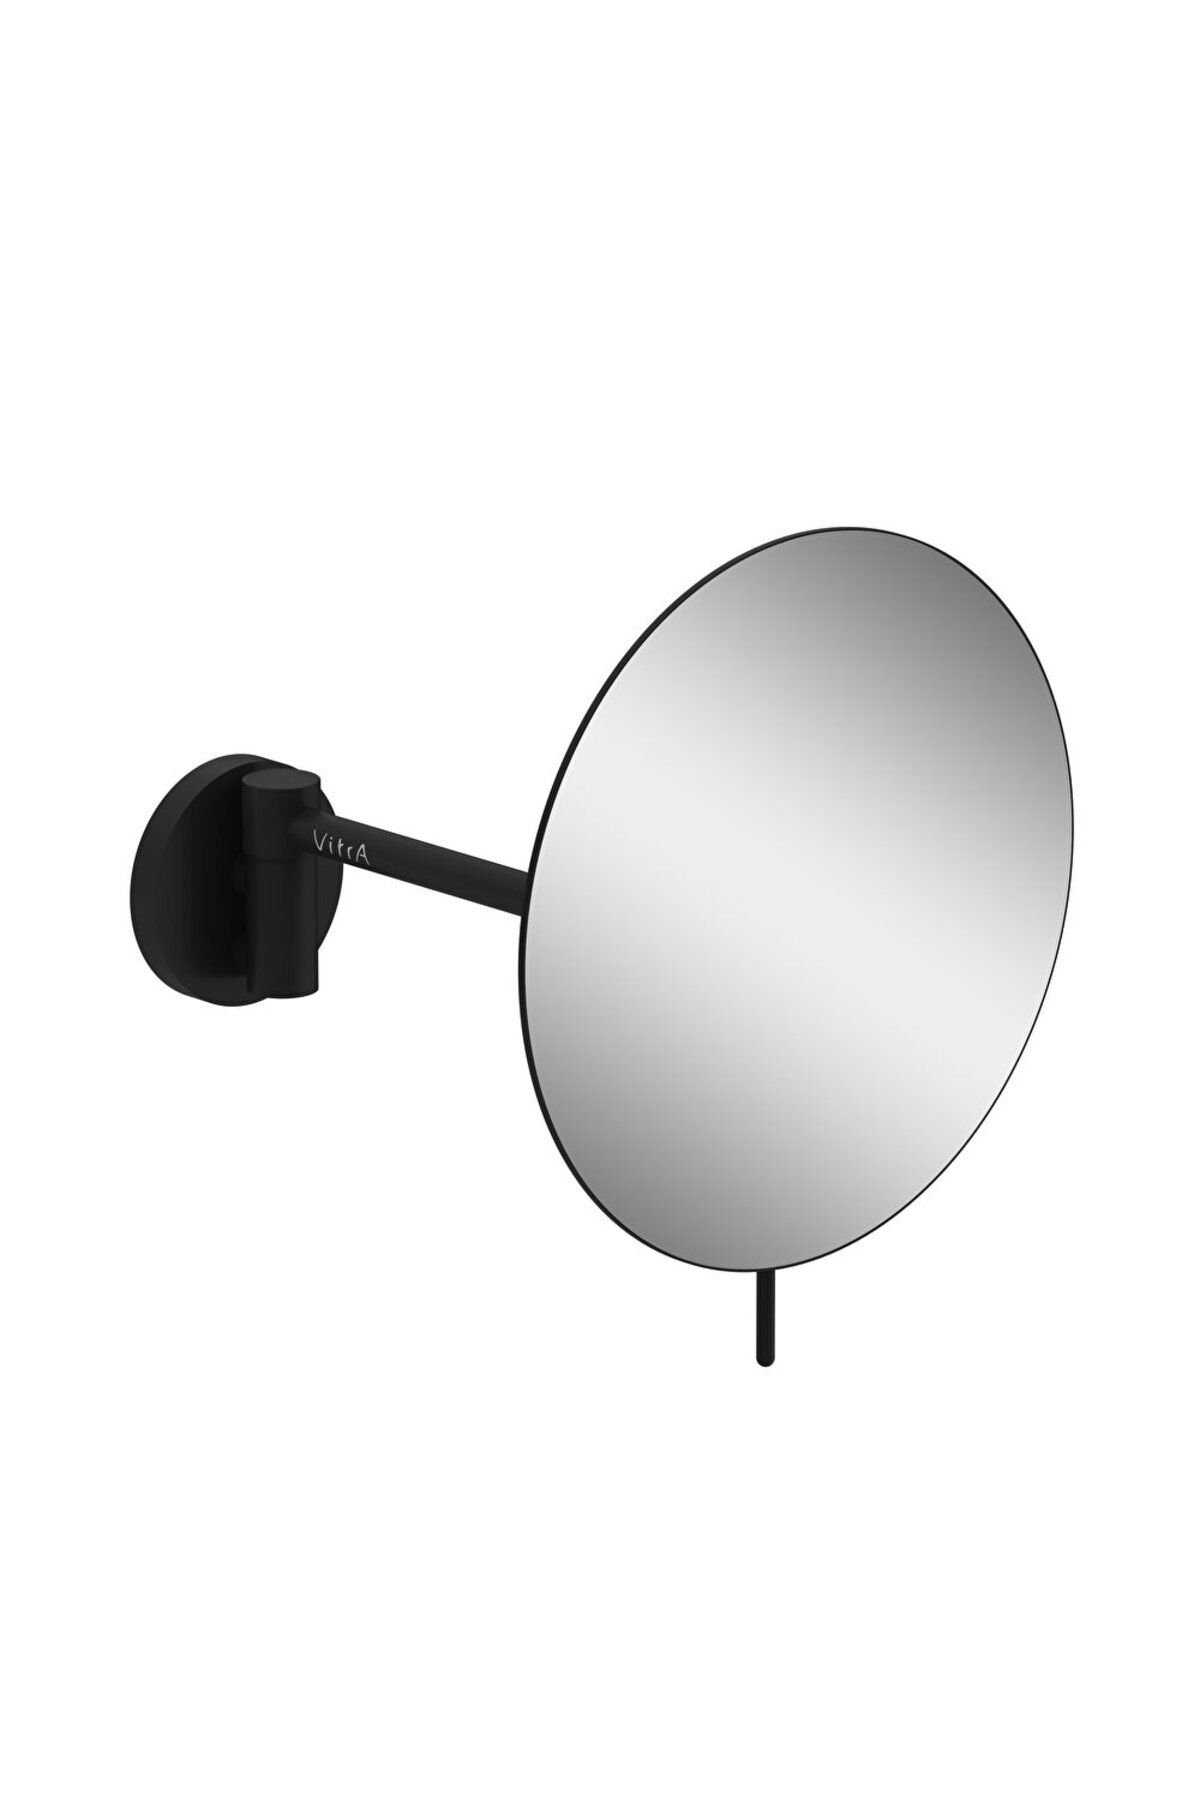 VitrA Origin A4489536 Makyaj Aynası, Duvardan, Mat Siyah